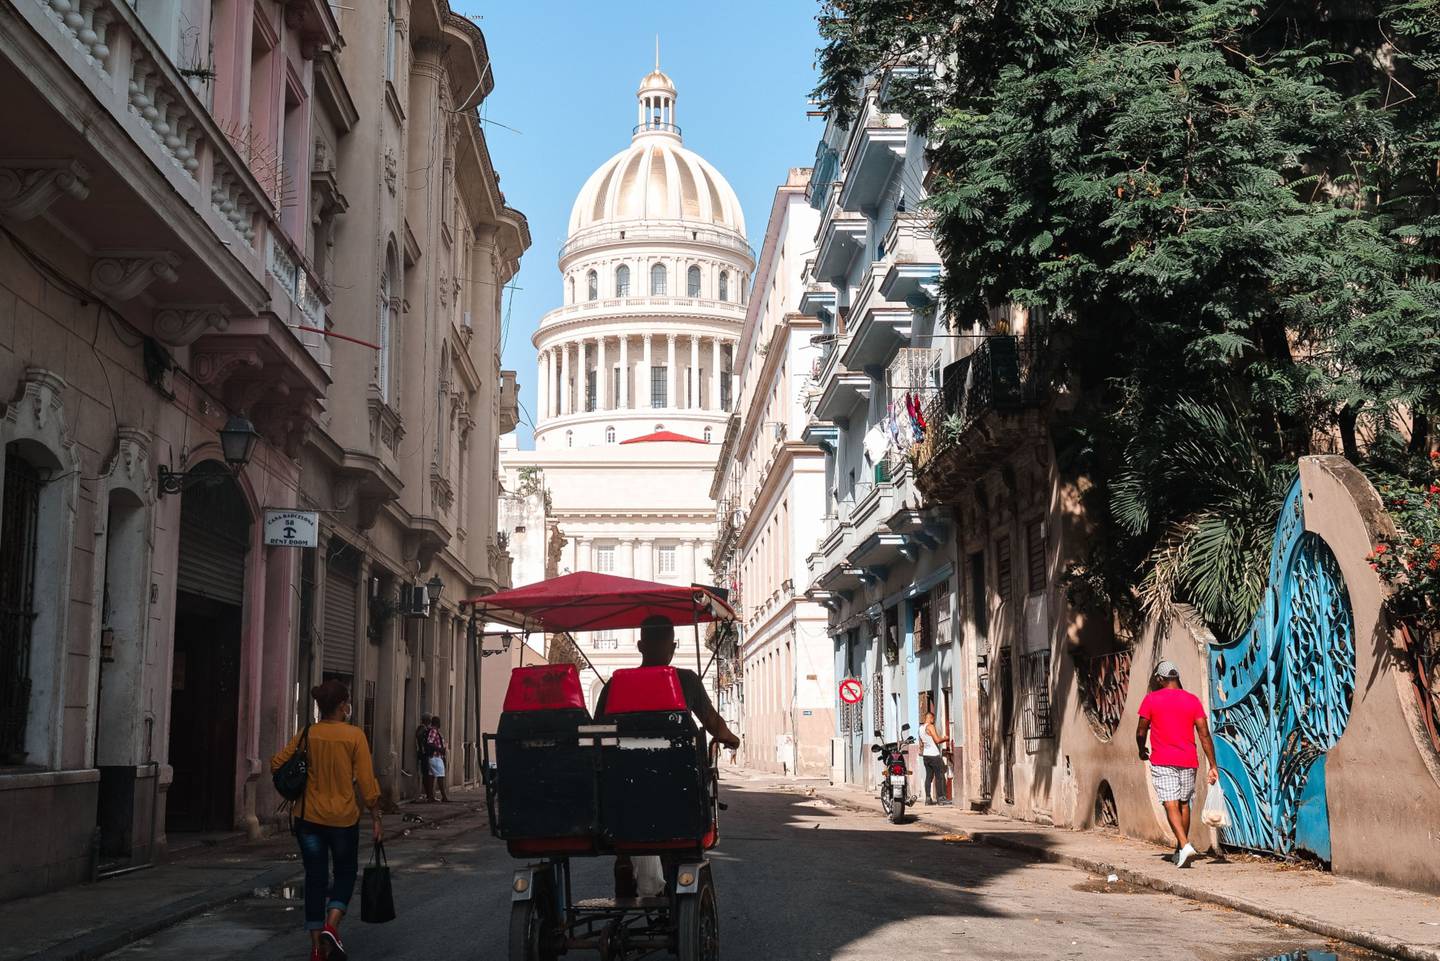 Una persona se dirige al edificio del Capitolio Nacional en La Habana, Cuba, el martes 13 de julio de 2021.